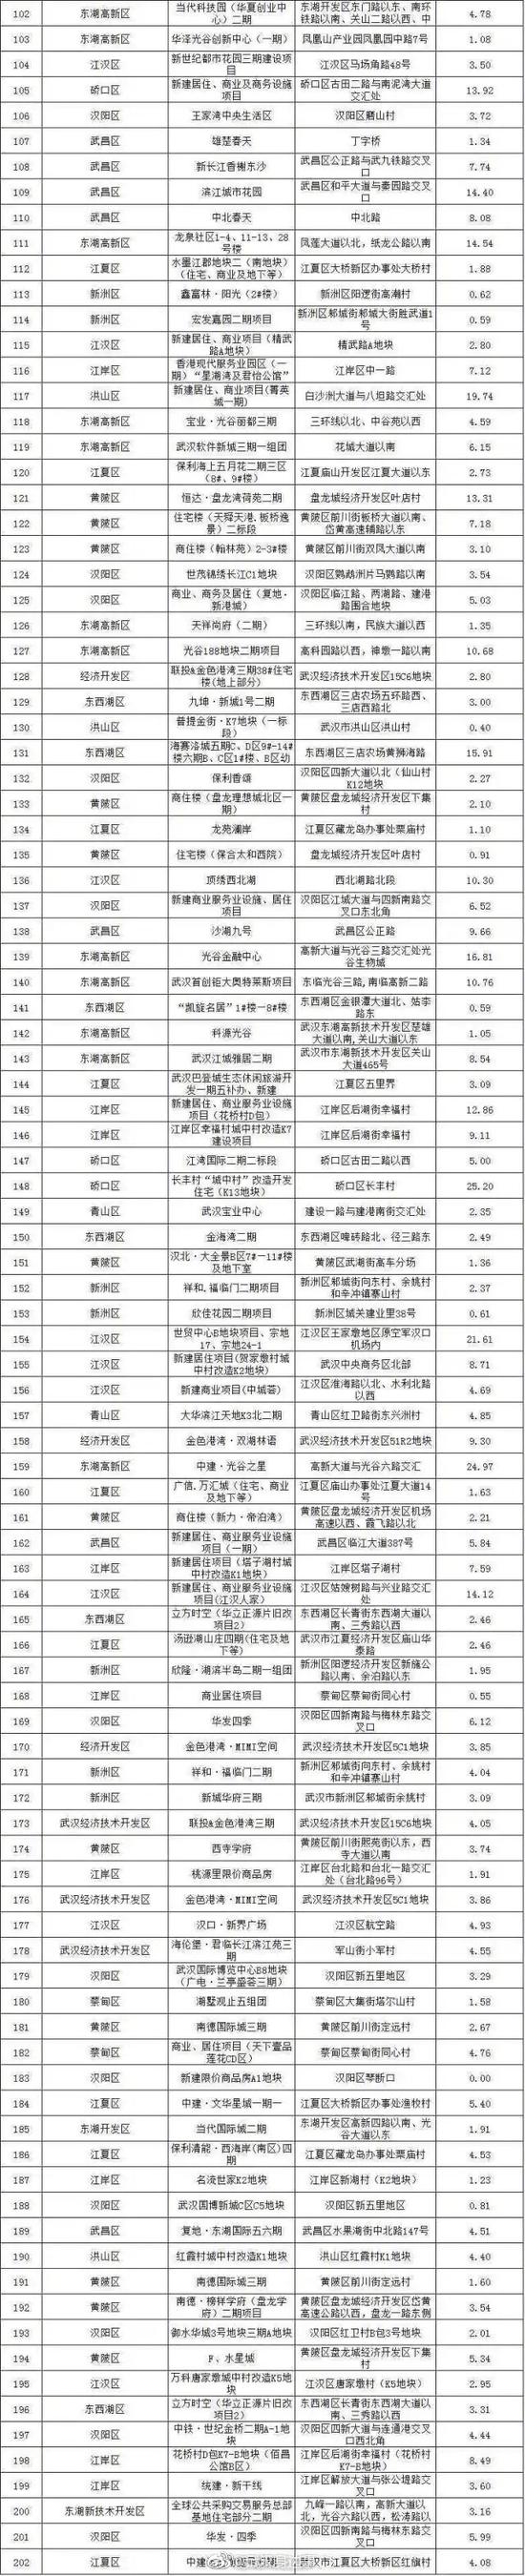 武汉公布全市可售楼盘名单